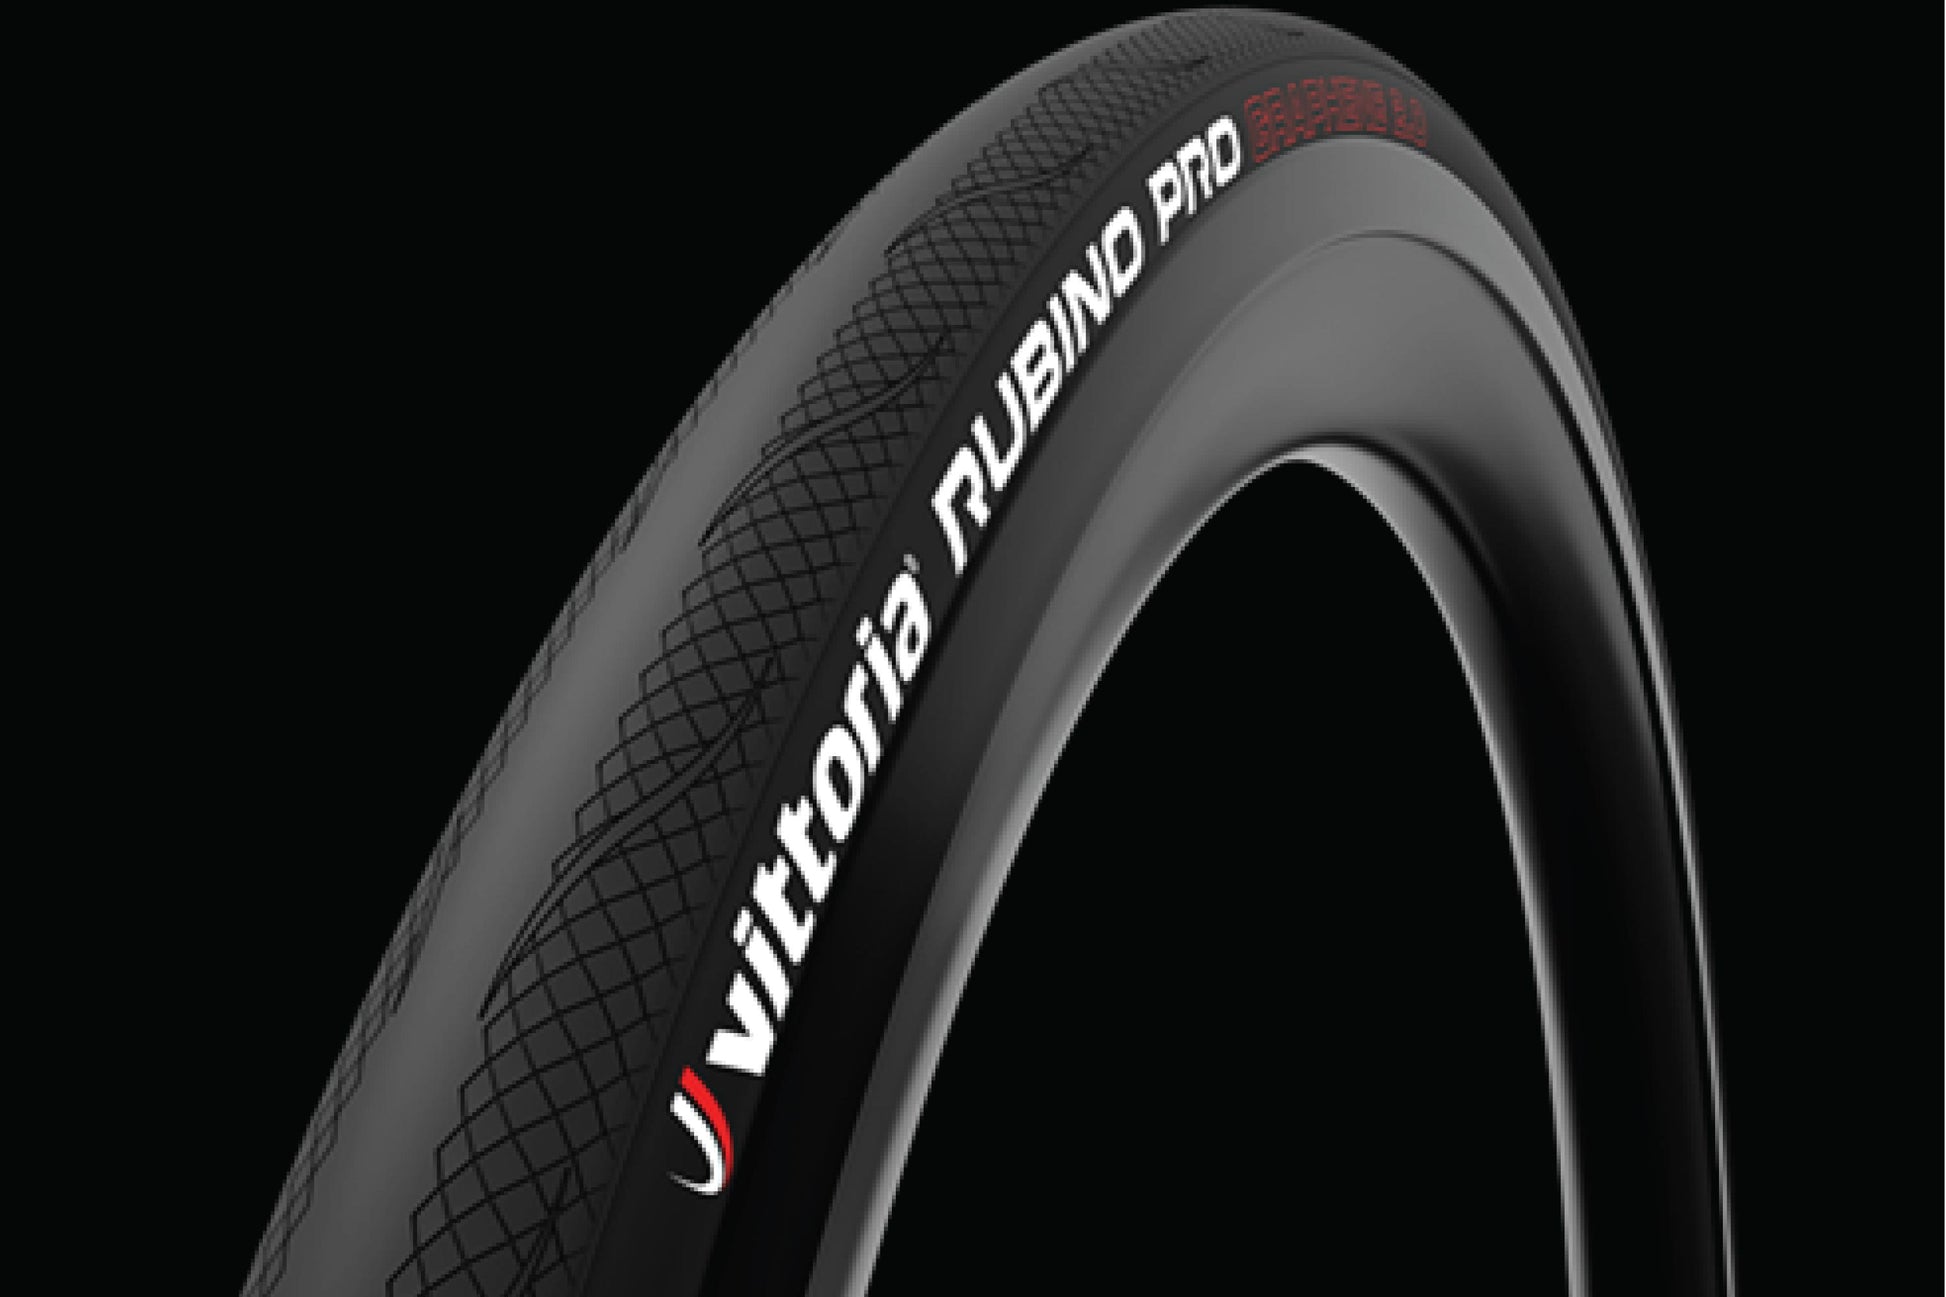 VITTORIA Rubino Pro G2.0 Road Tyre - FISHTAIL CYCLERY